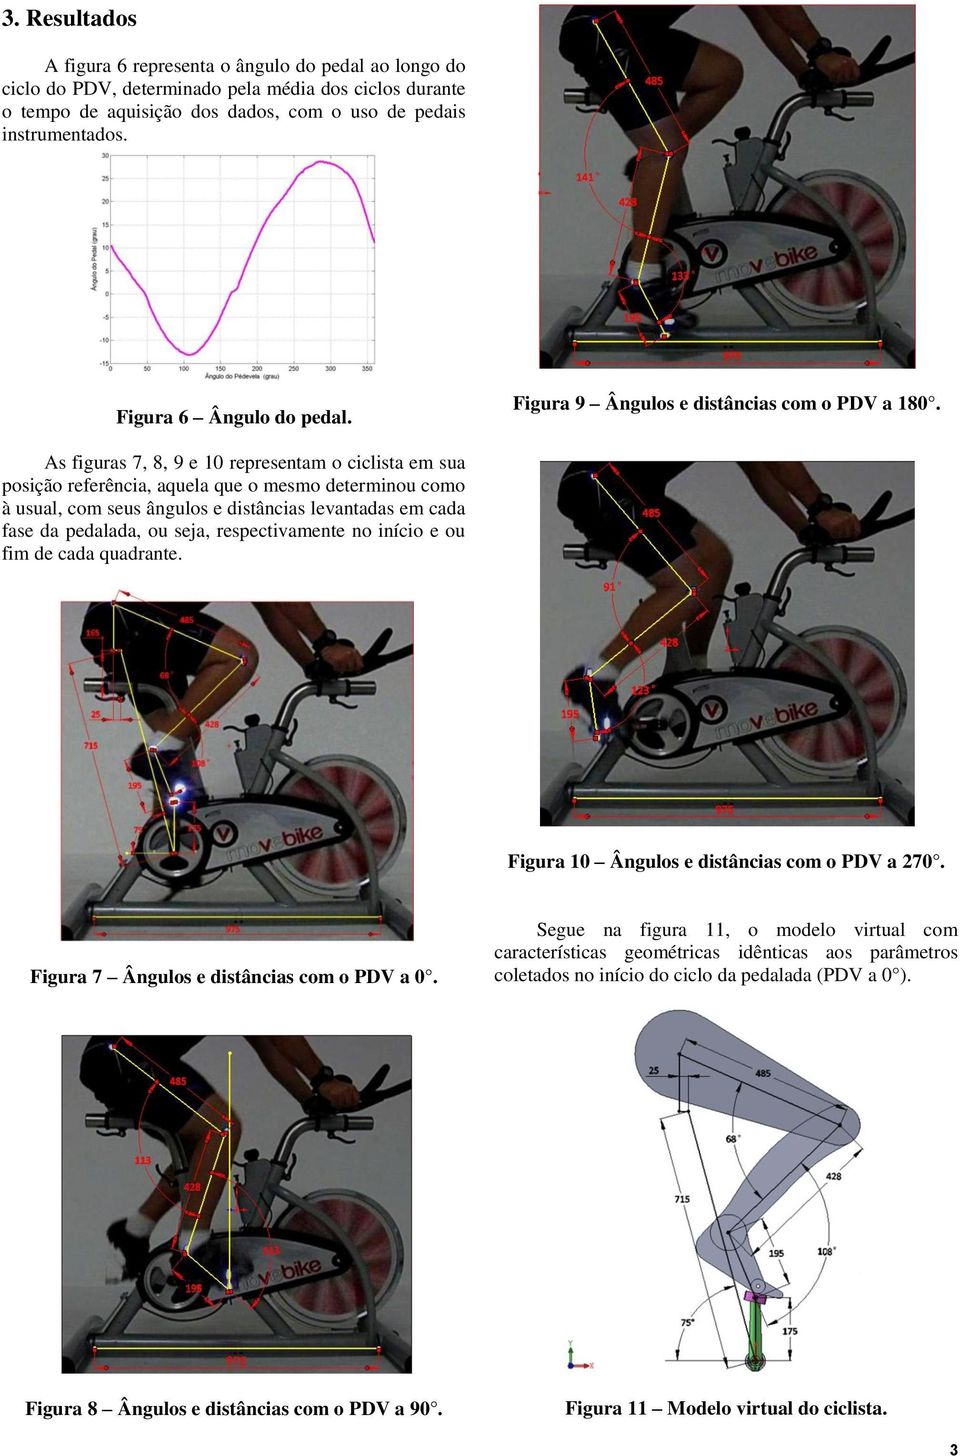 As figuras 7, 8, 9 e 10 representam o ciclista em sua posição referência, aquela que o mesmo determinou como à usual, com seus ângulos e distâncias levantadas em cada fase da pedalada, ou seja,